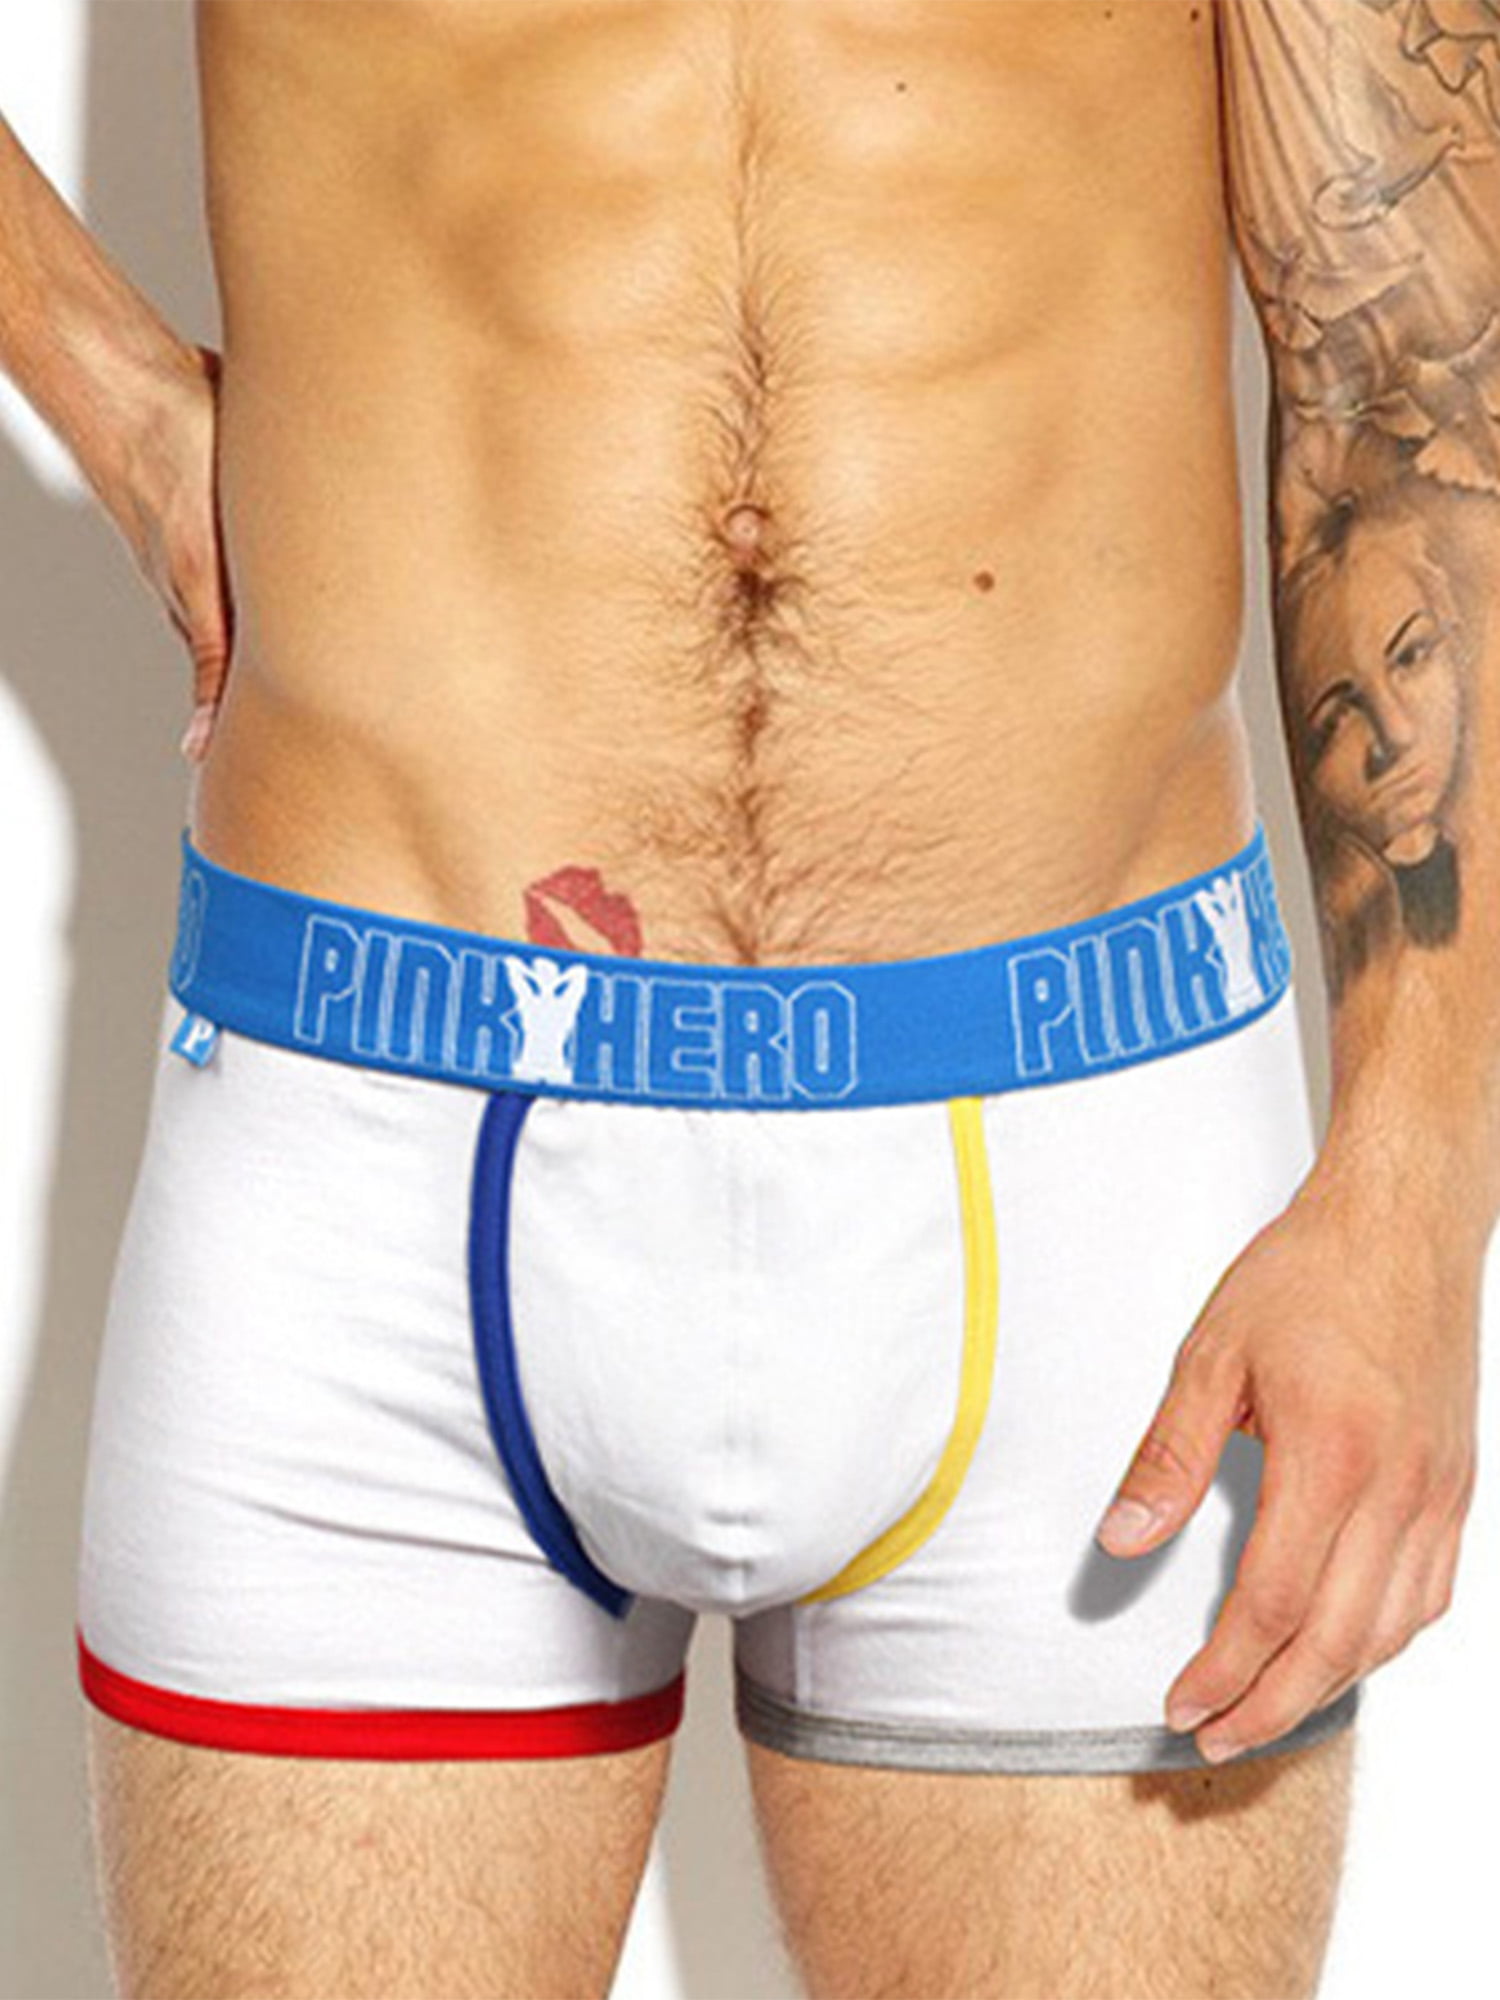 UK Men's Boxer Briefs Breathable Underwear Bulge Pouch Shorts Trunks Underpants